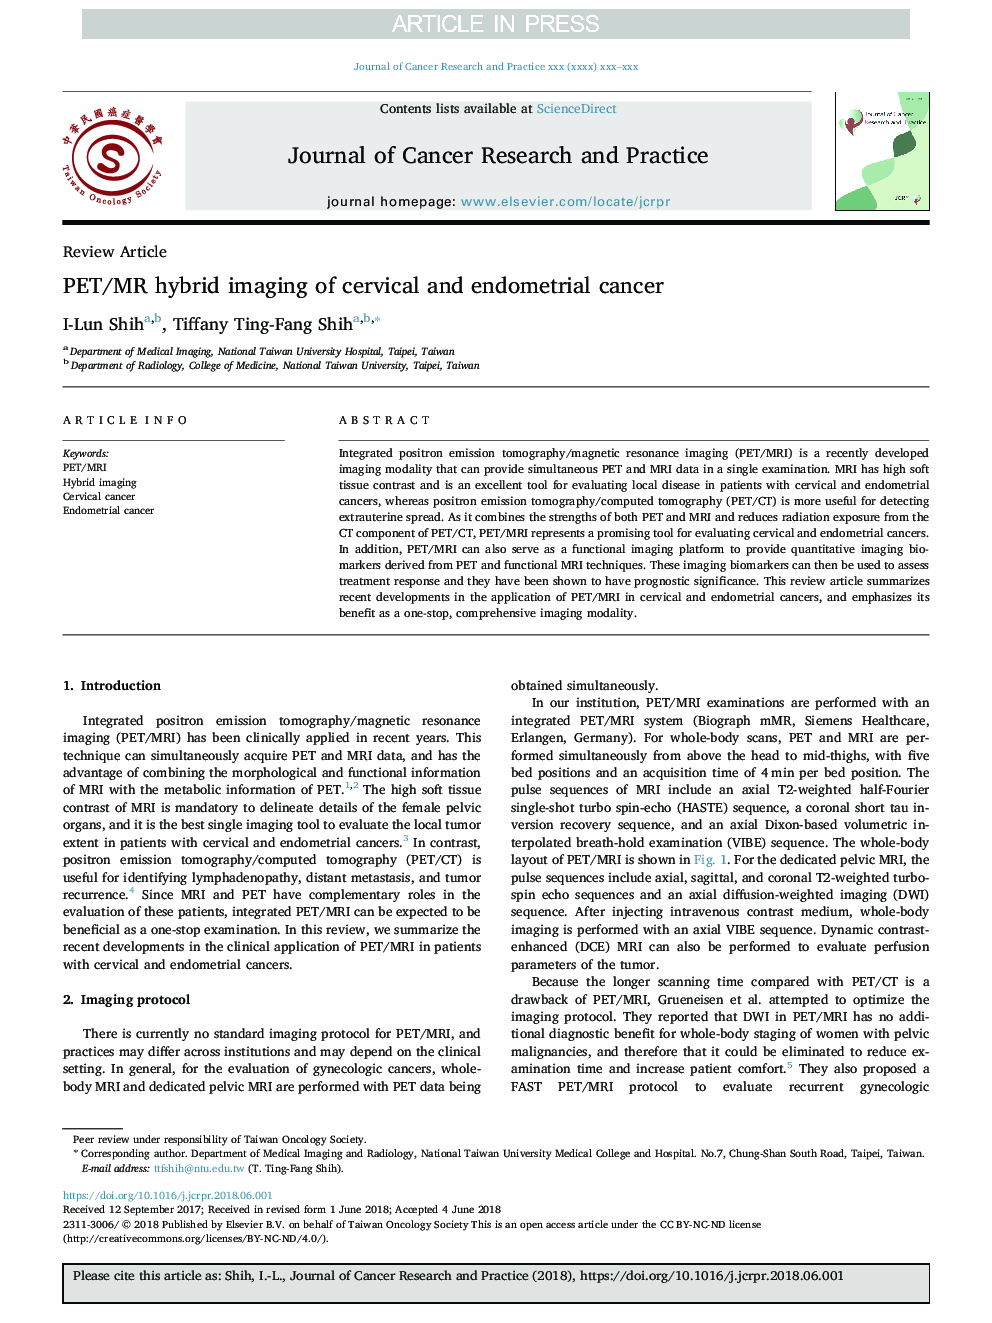 PET/MR hybrid imaging of cervical and endometrial cancer